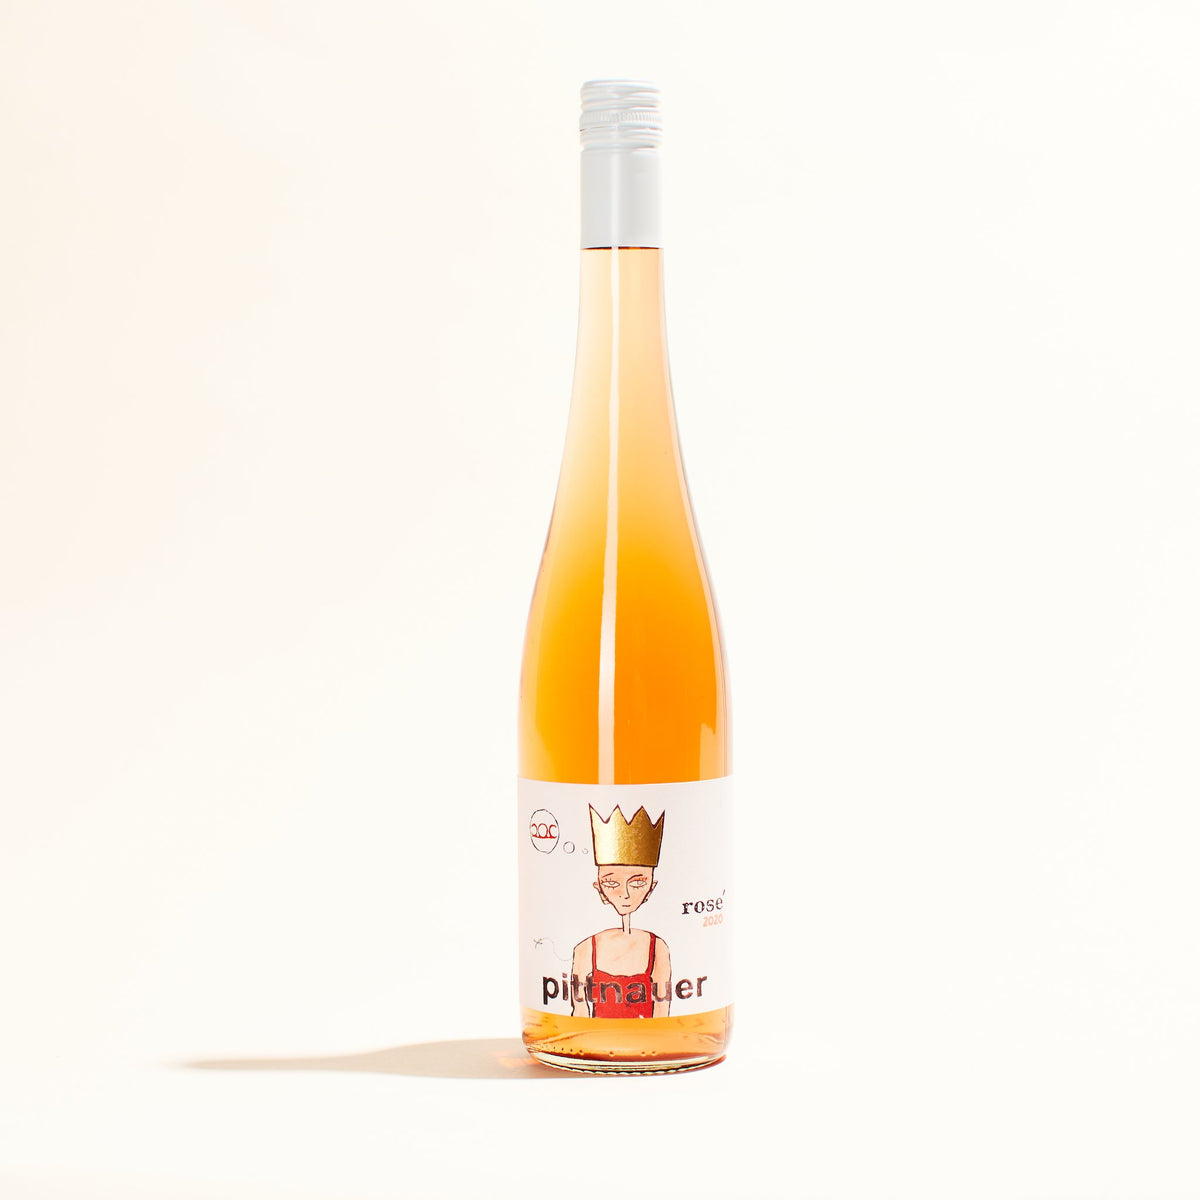 Konig Rosé | Weingut Pittnauer | MYSA Natural Wine